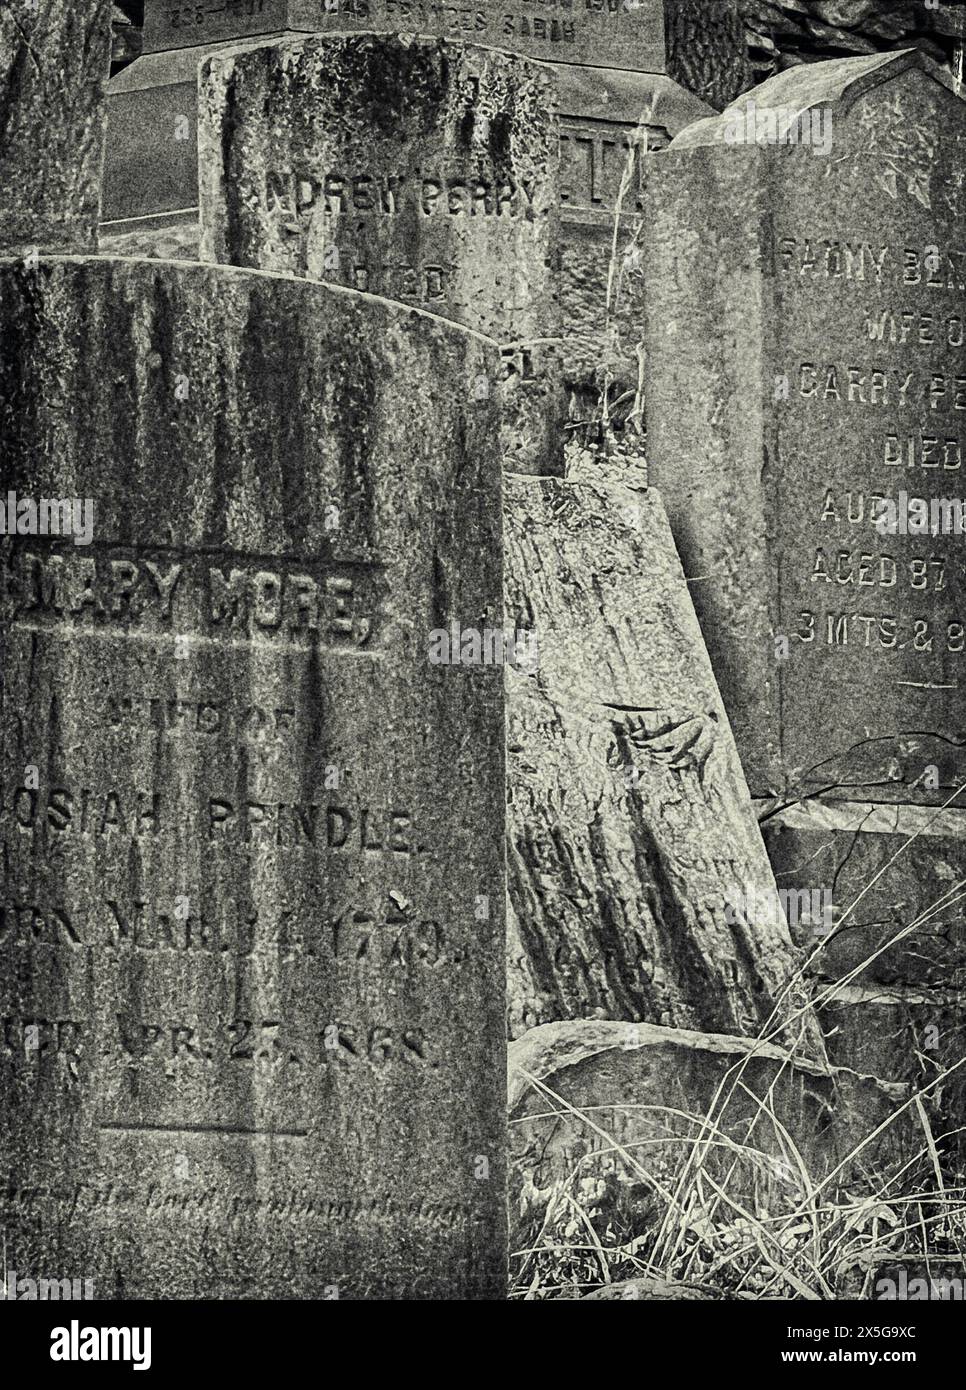 Une photographie en noir et blanc d'une collection de pierres tombales vieilles et érodées, certaines à peine lisibles, retrouvées dans un cimetière datant de 1720 Banque D'Images